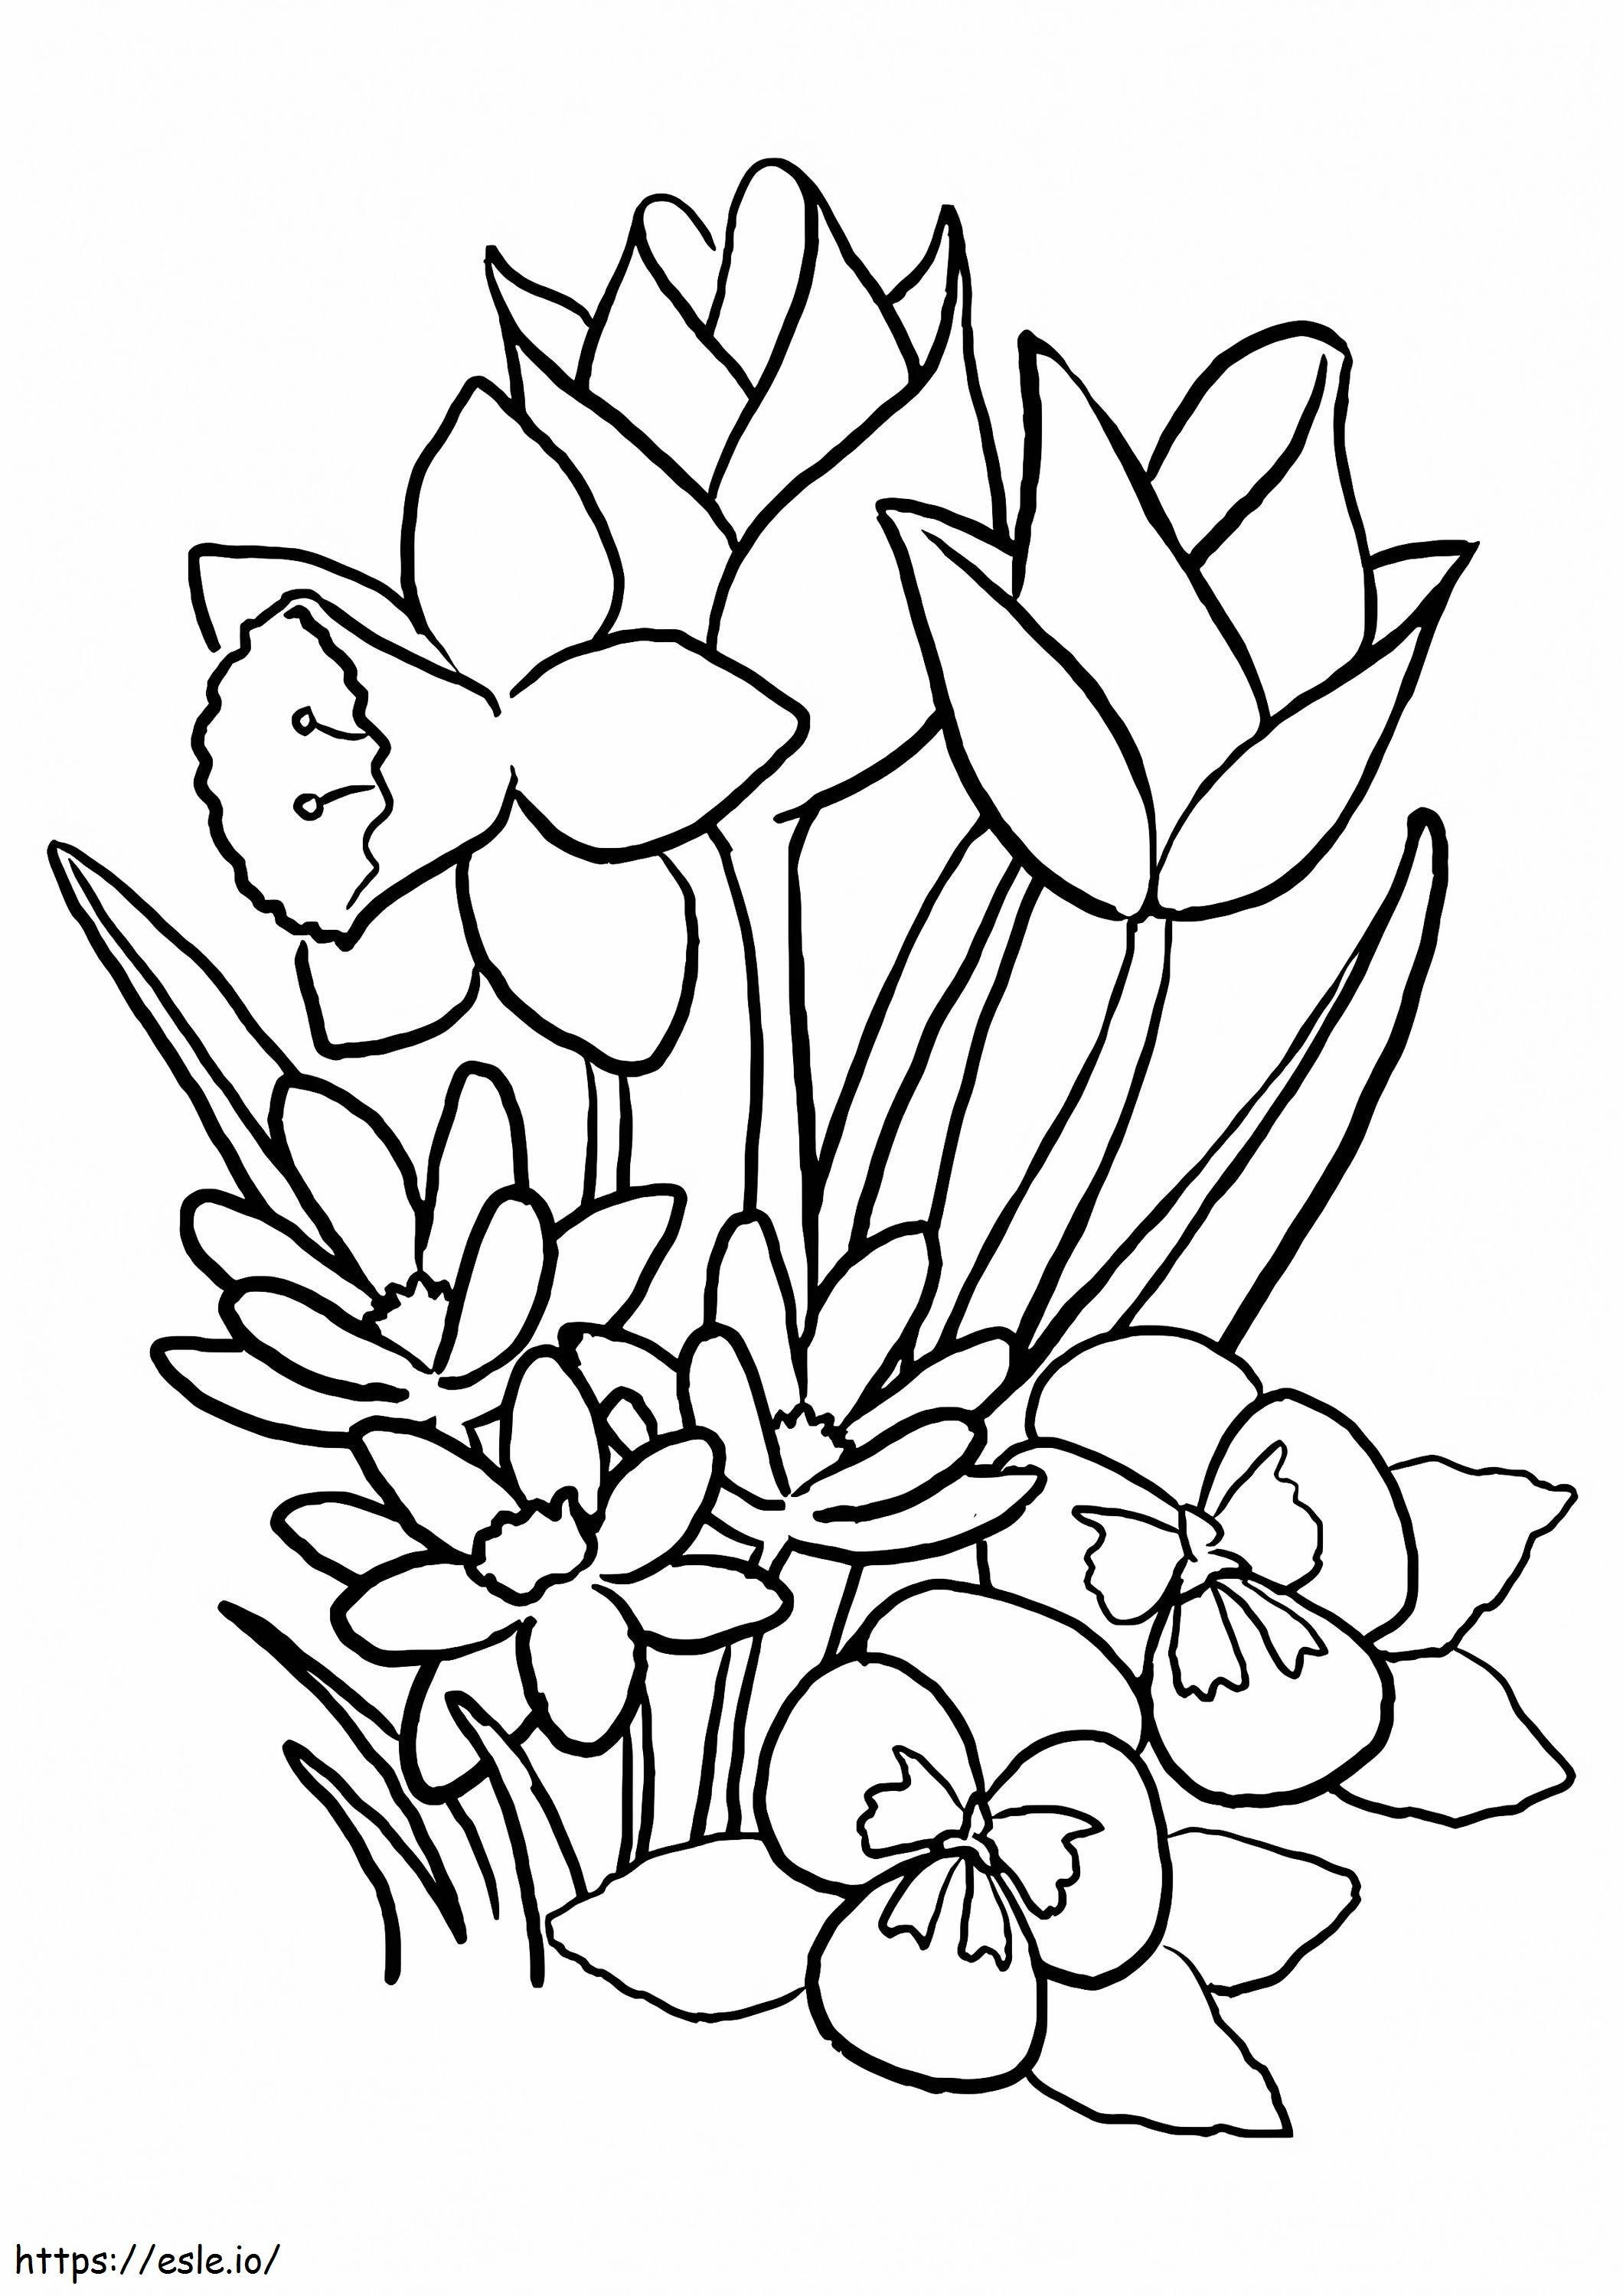 Coloriage 1526979192 Tulipe Petite Princesse A4 à imprimer dessin